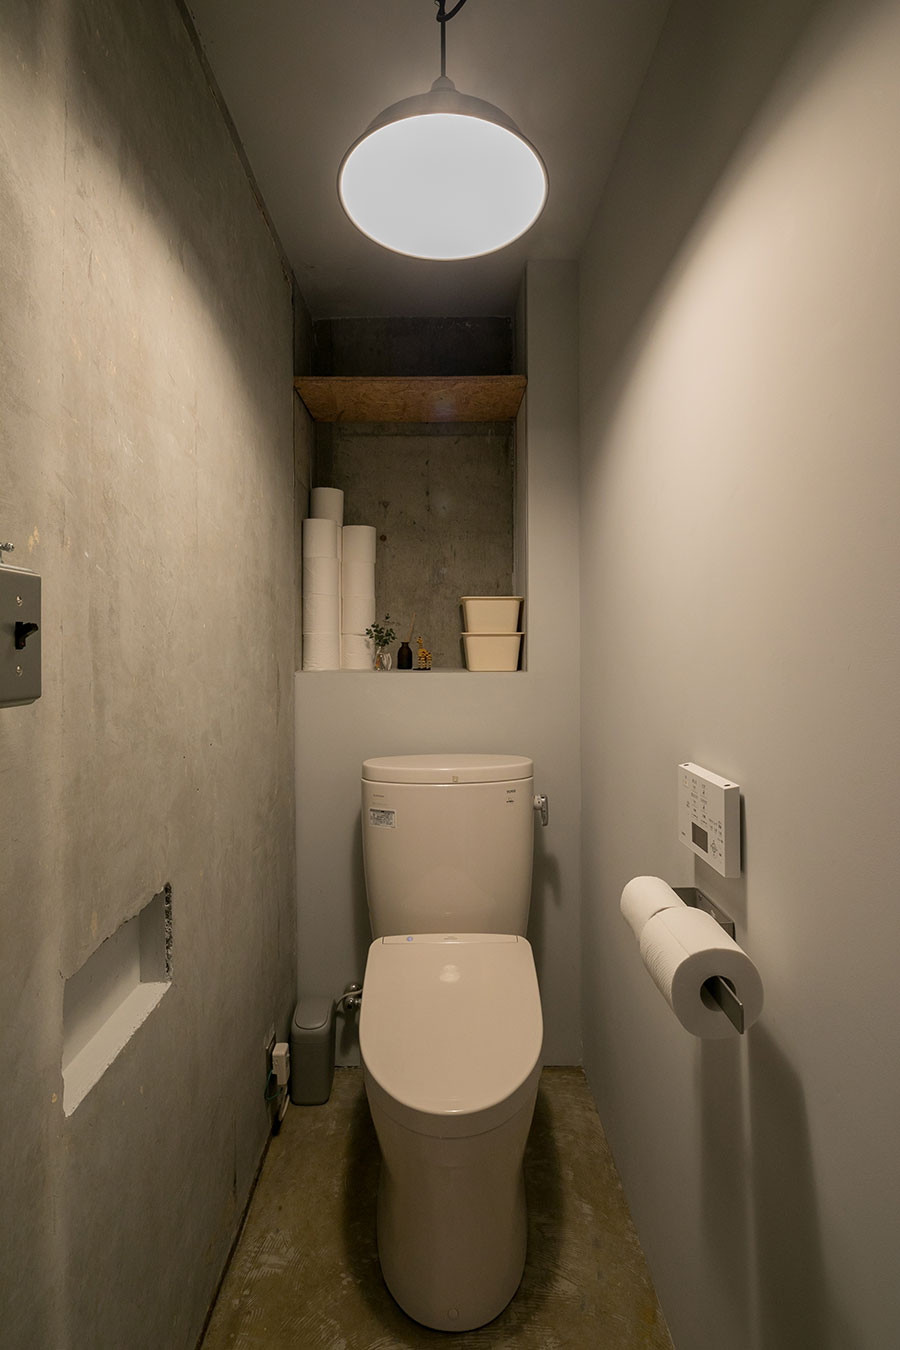 「前の住人の方がきれいにリフォームしたばかりだったのでトイレ本体はそのまま使いました」